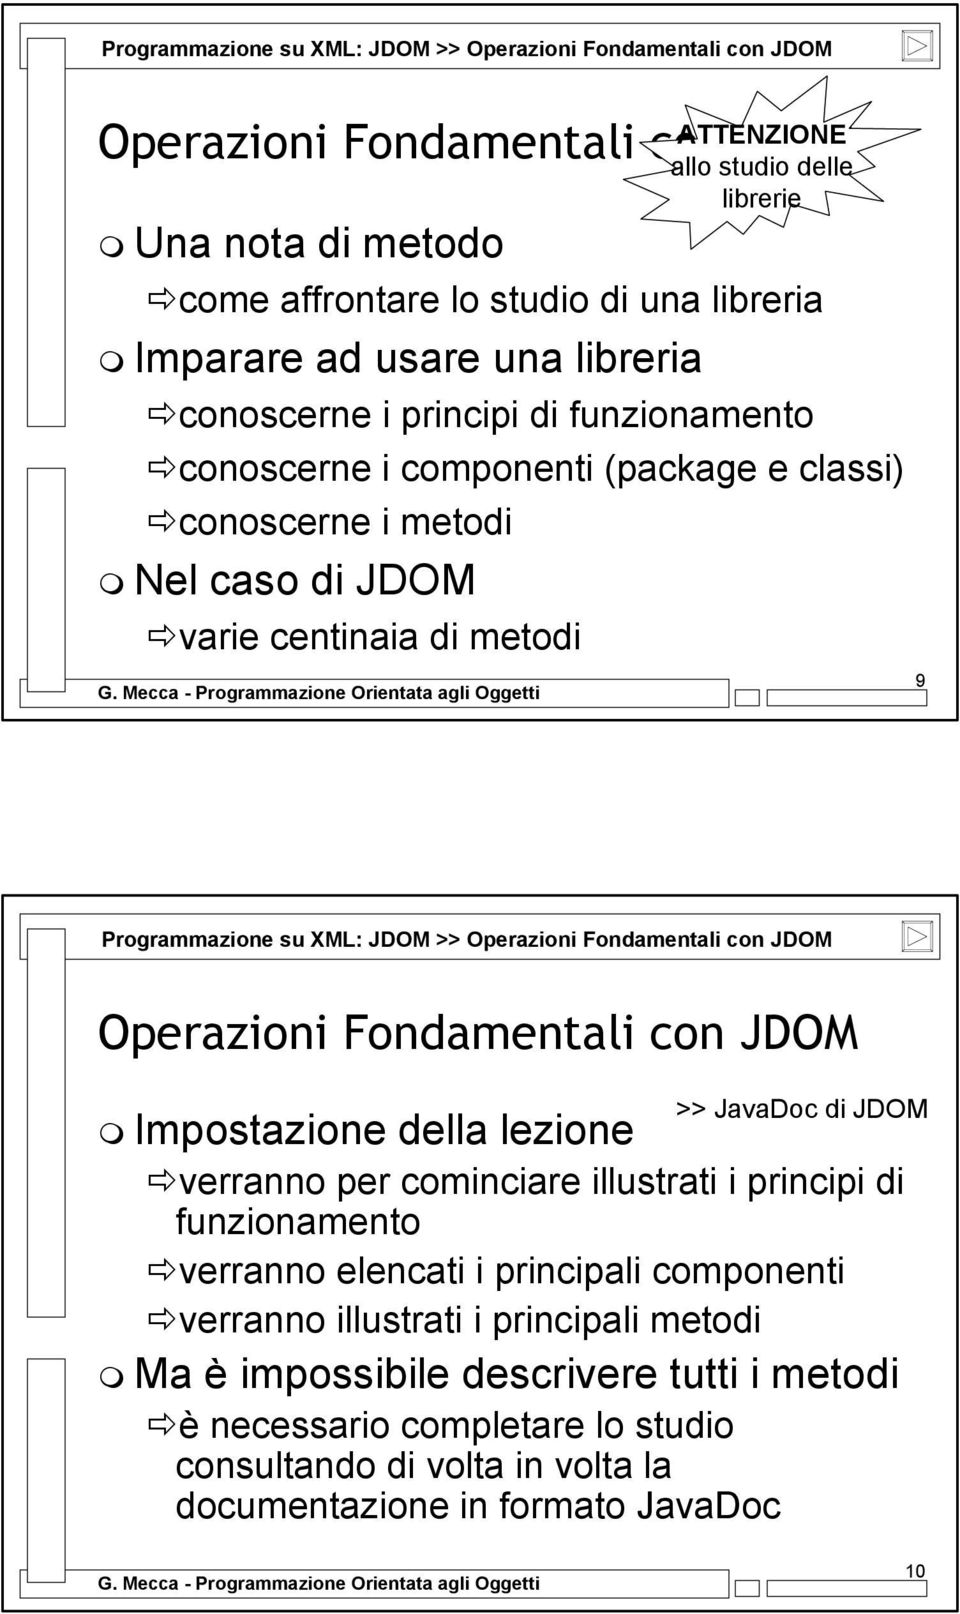 JDOM Operazioni Fondamentali con JDOM >> JavaDoc di JDOM Impostazione della lezione verranno per cominciare illustrati i principi di funzionamento verranno elencati i principali